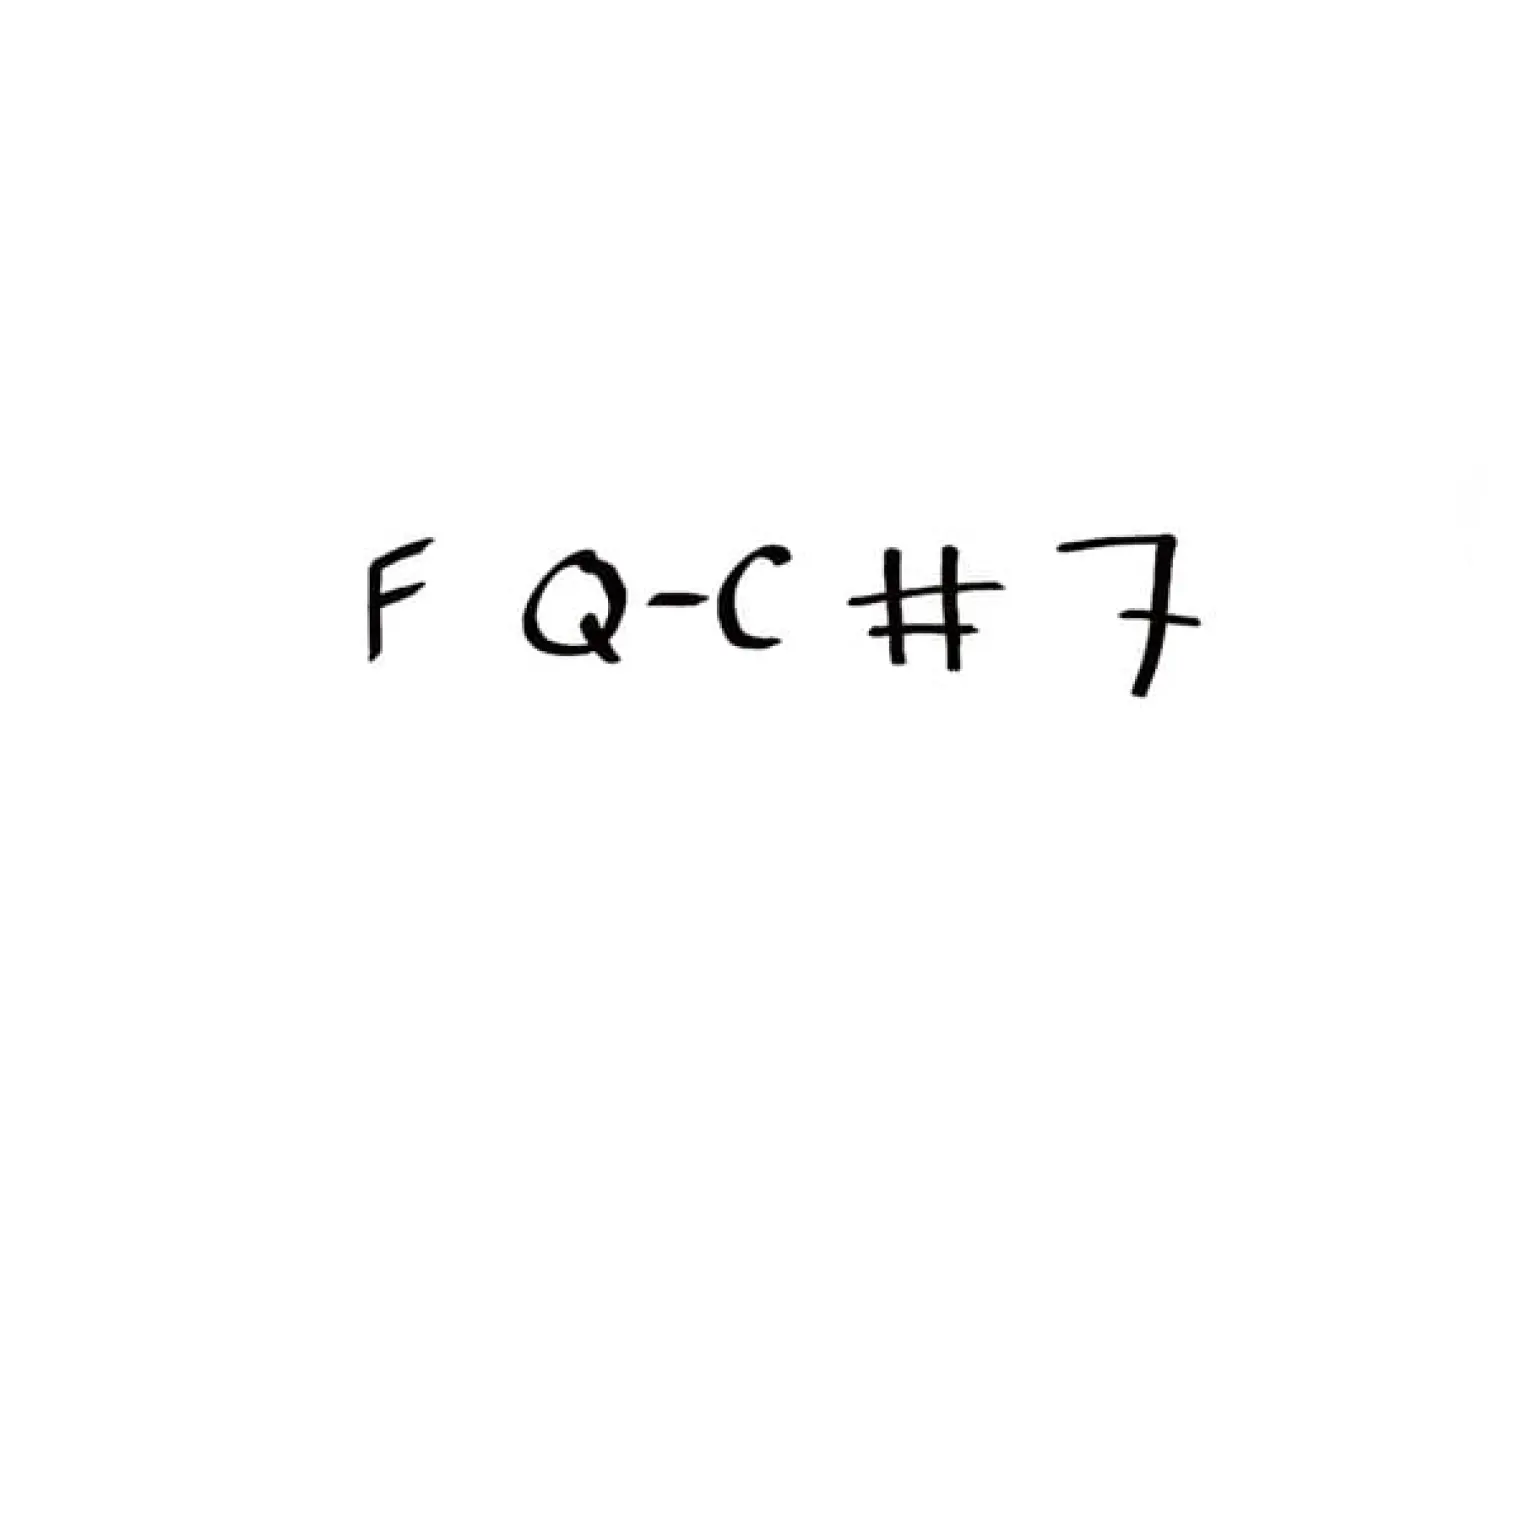 F Q-C # 7 -  Willow 